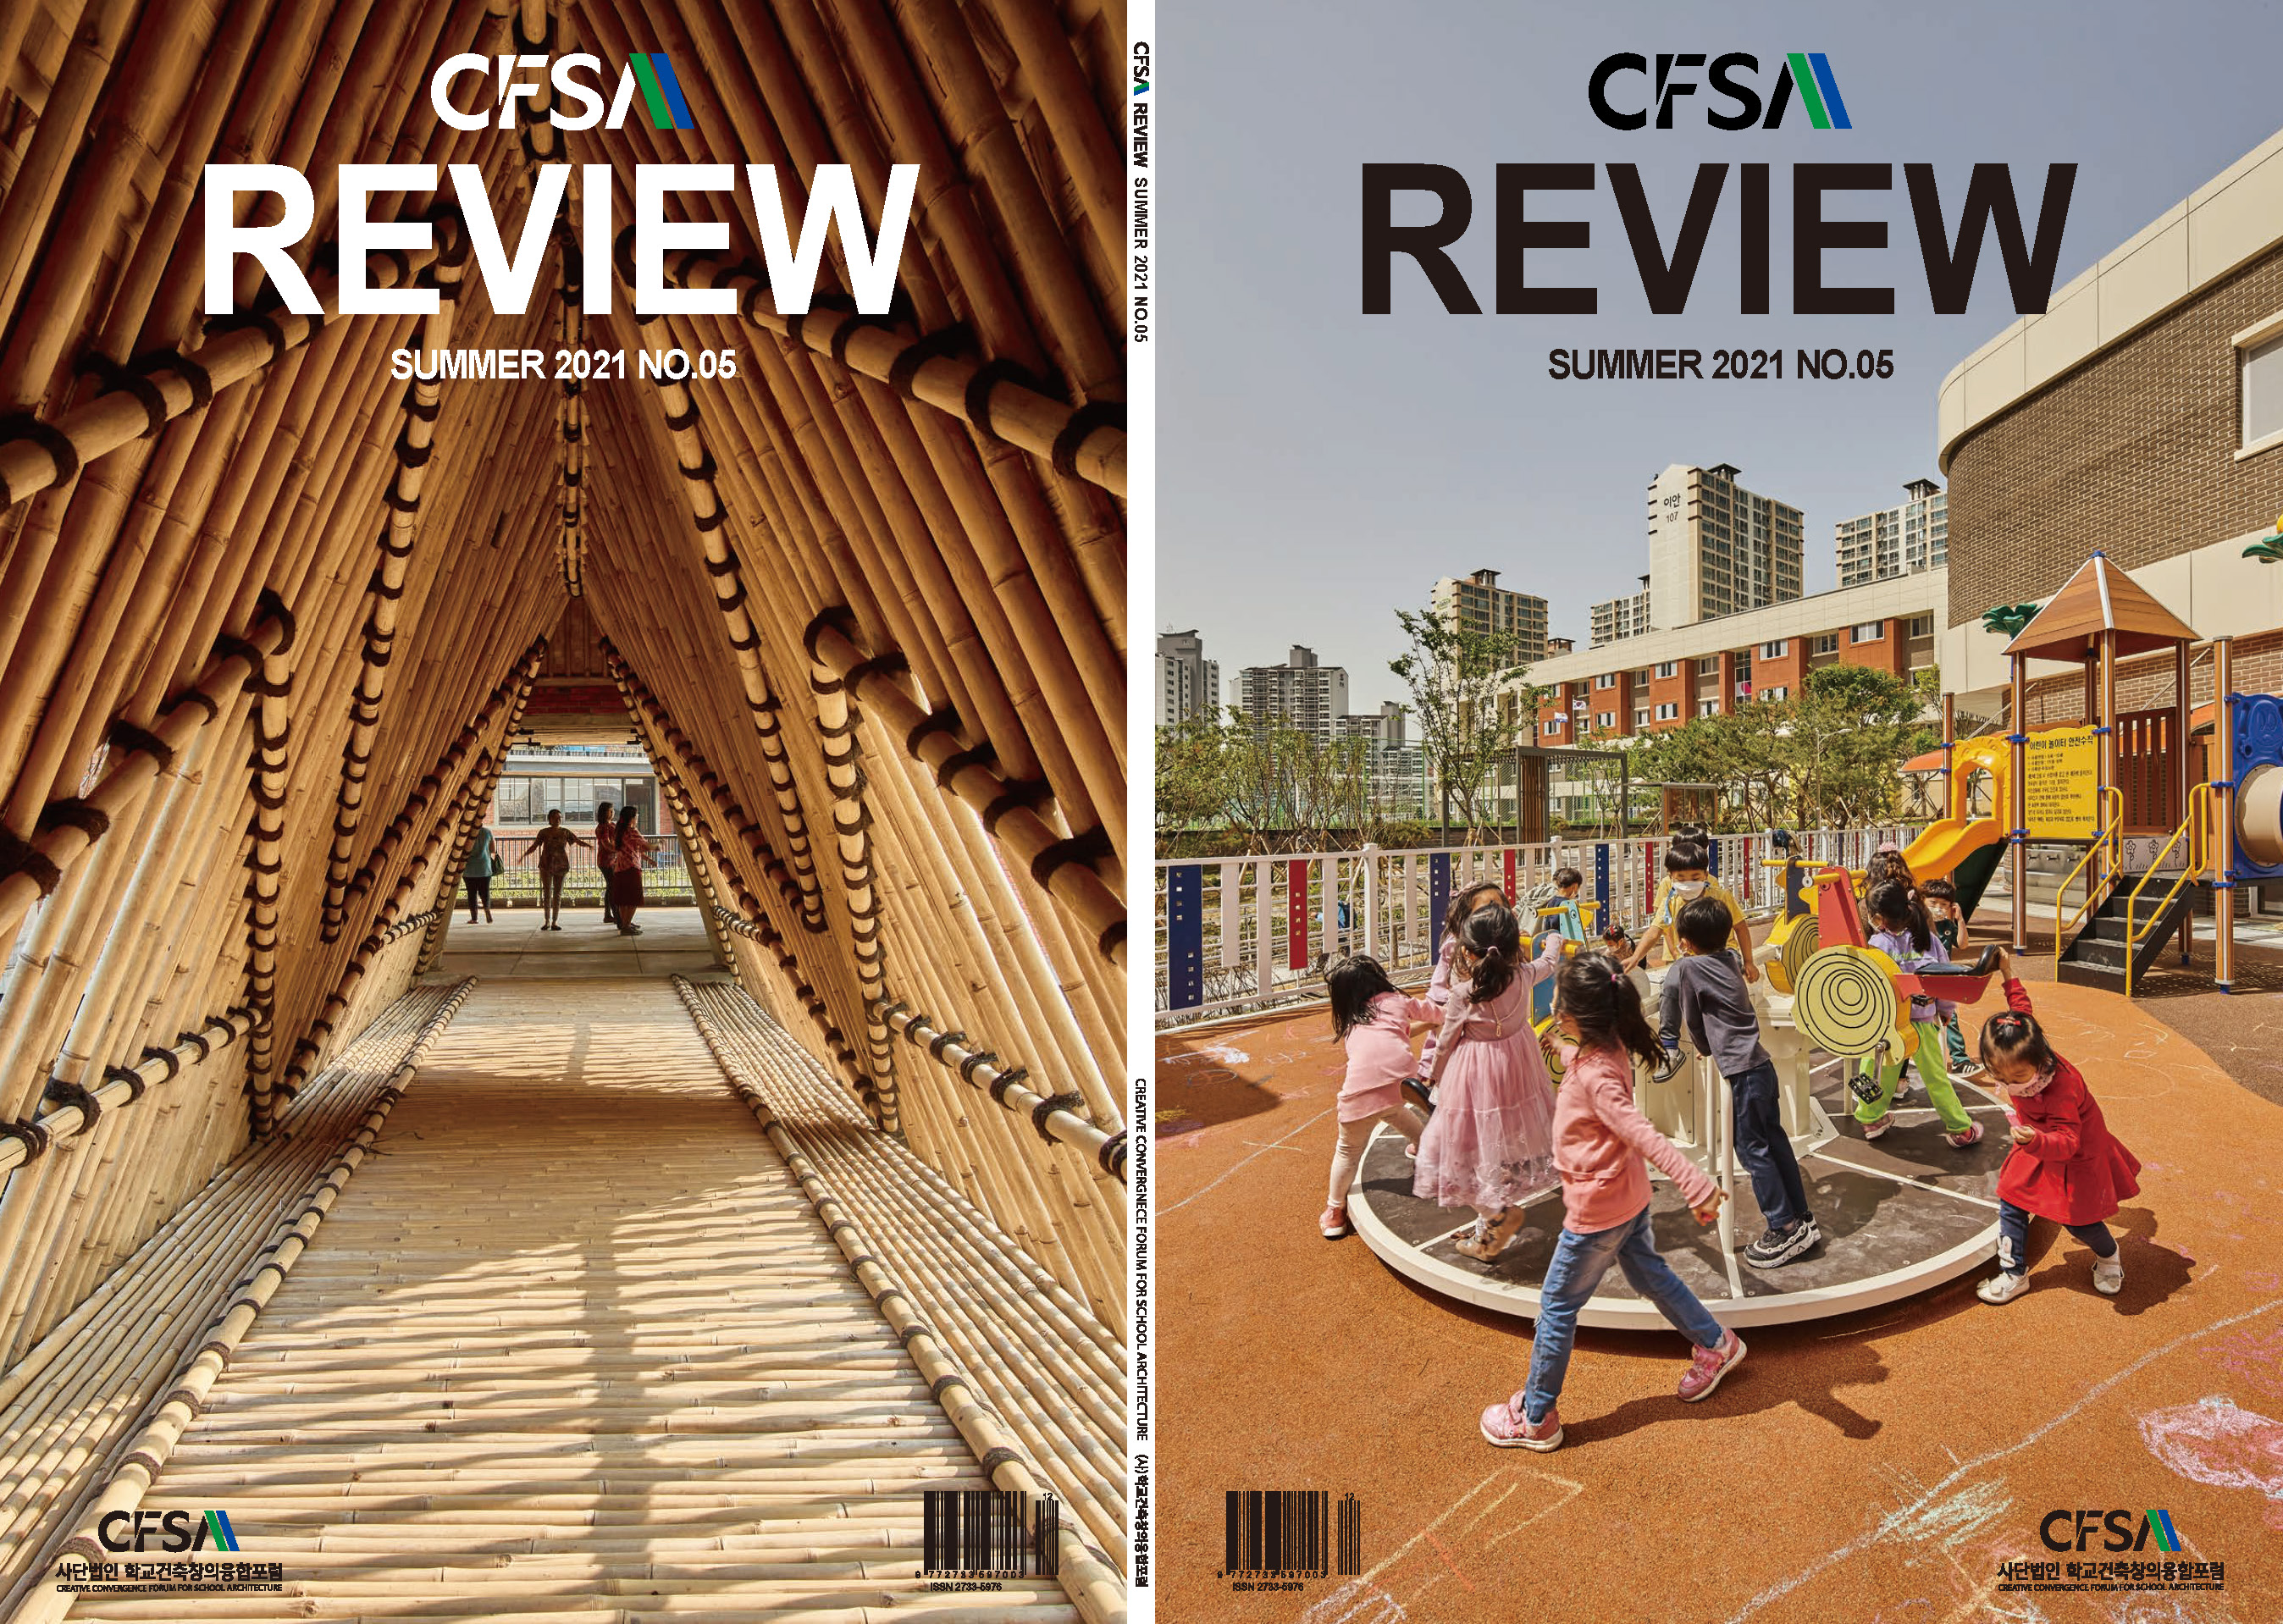 CFSA REVIEW SUMMER 2021 NO.05